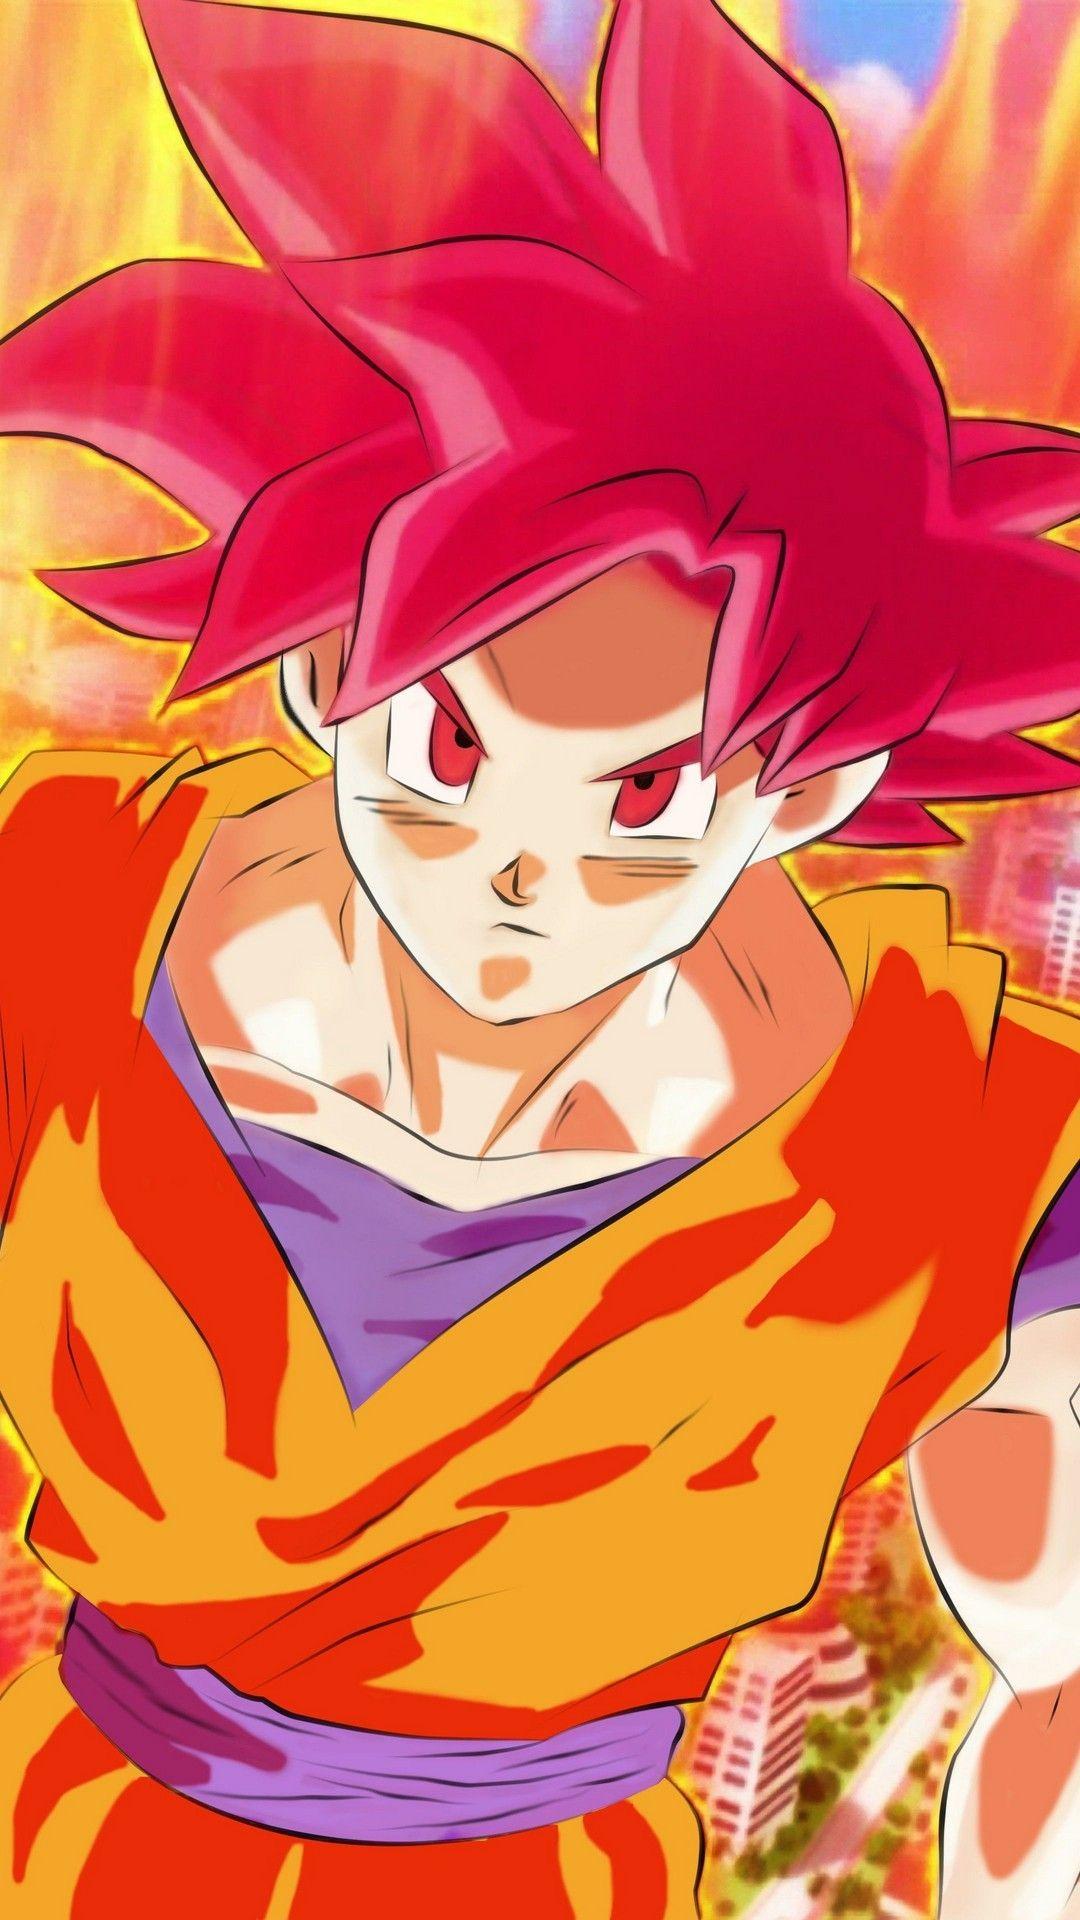 Wallpaper Goku Super Saiyan God Android Mobile